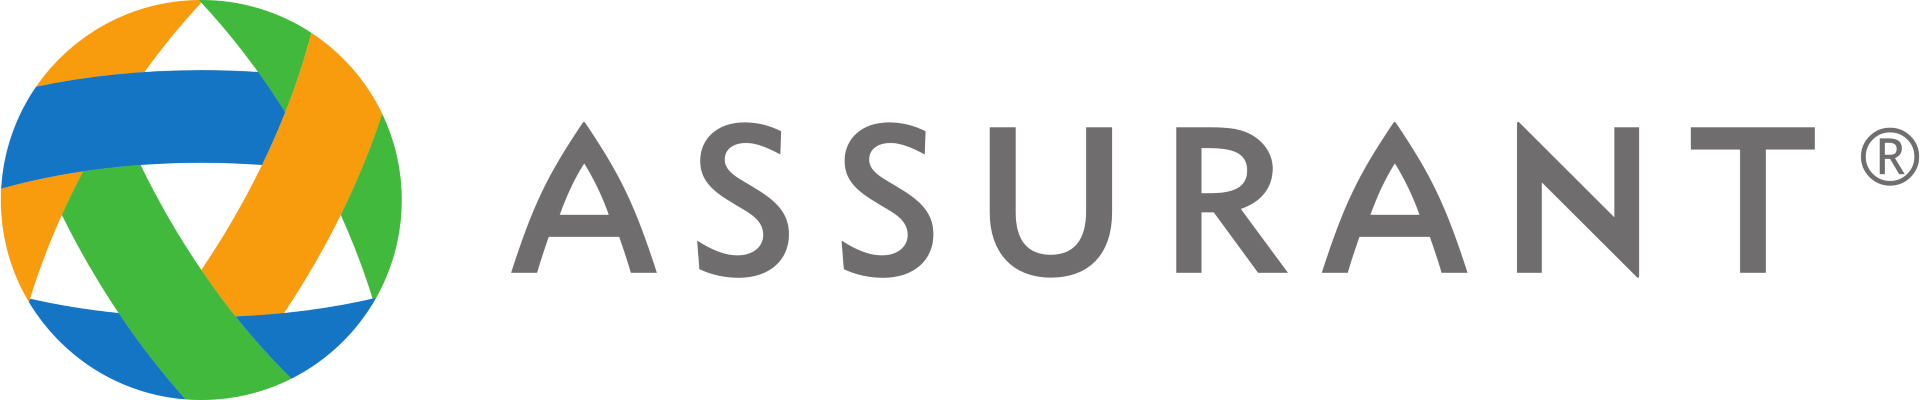 Assurant company logo